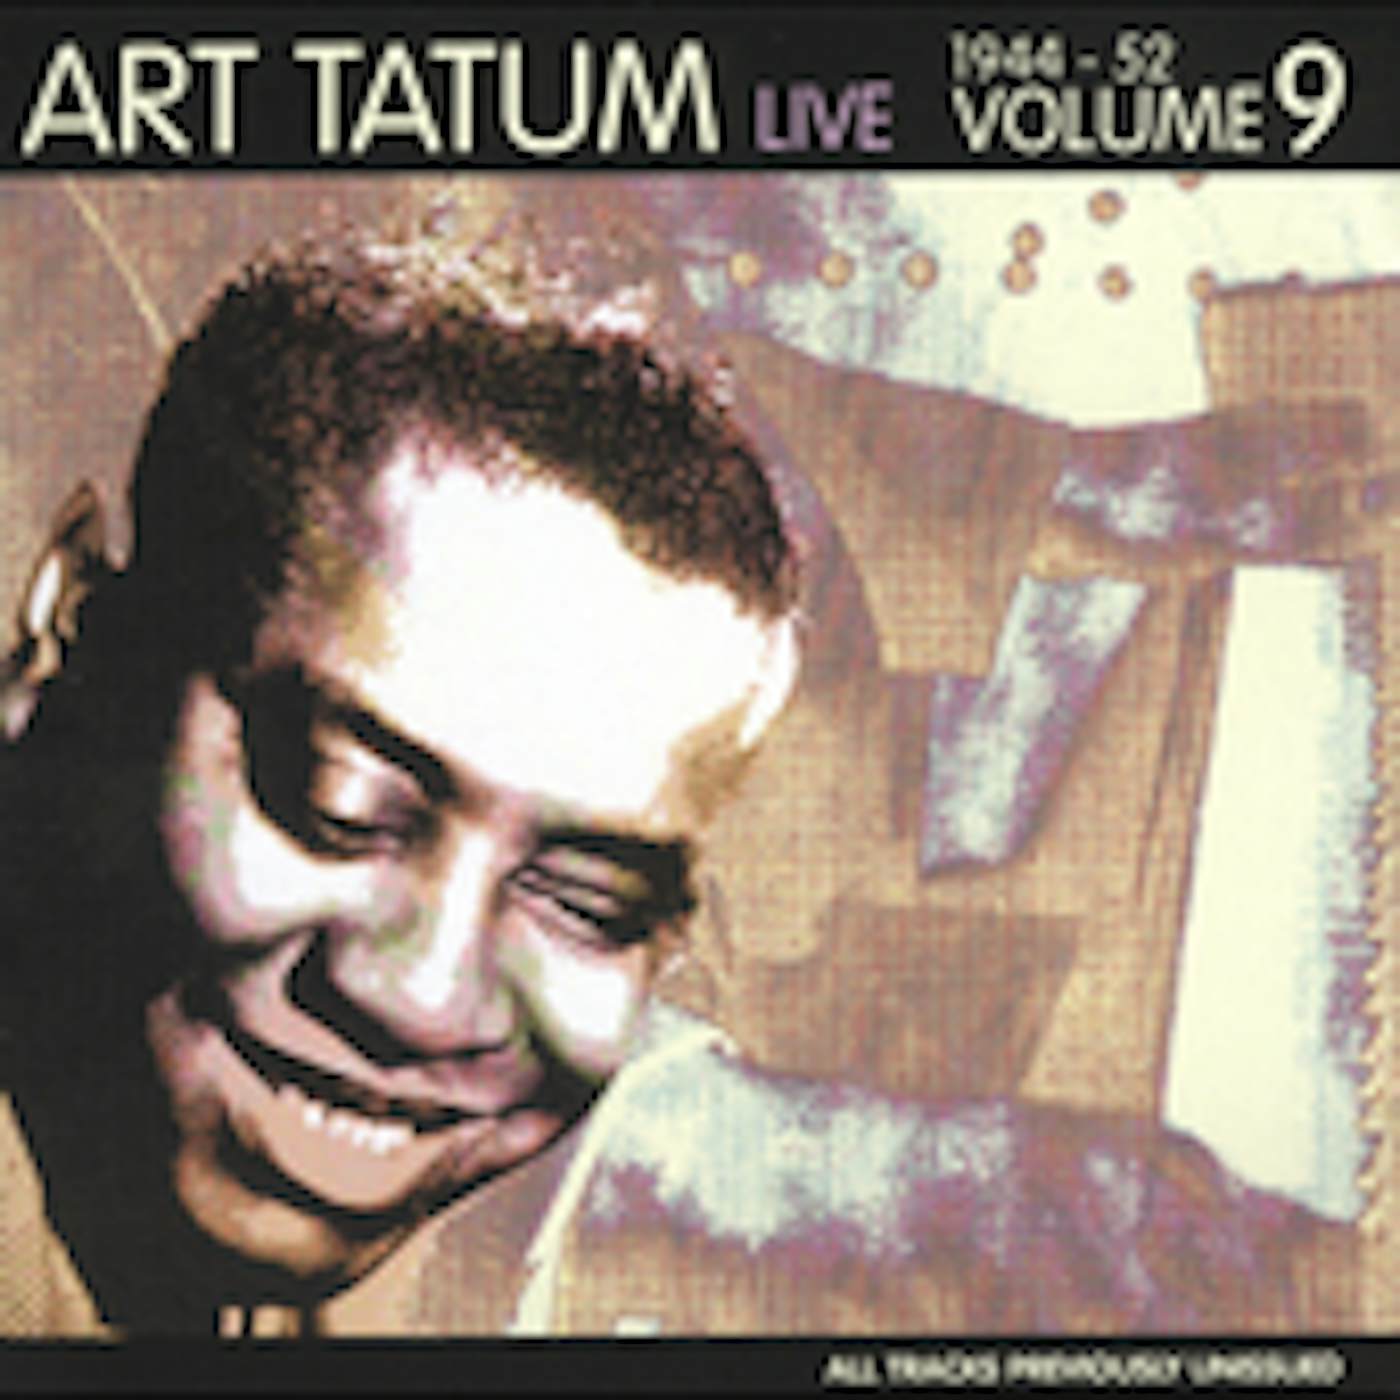 Art Tatum LIVE 1944-52 9 CD